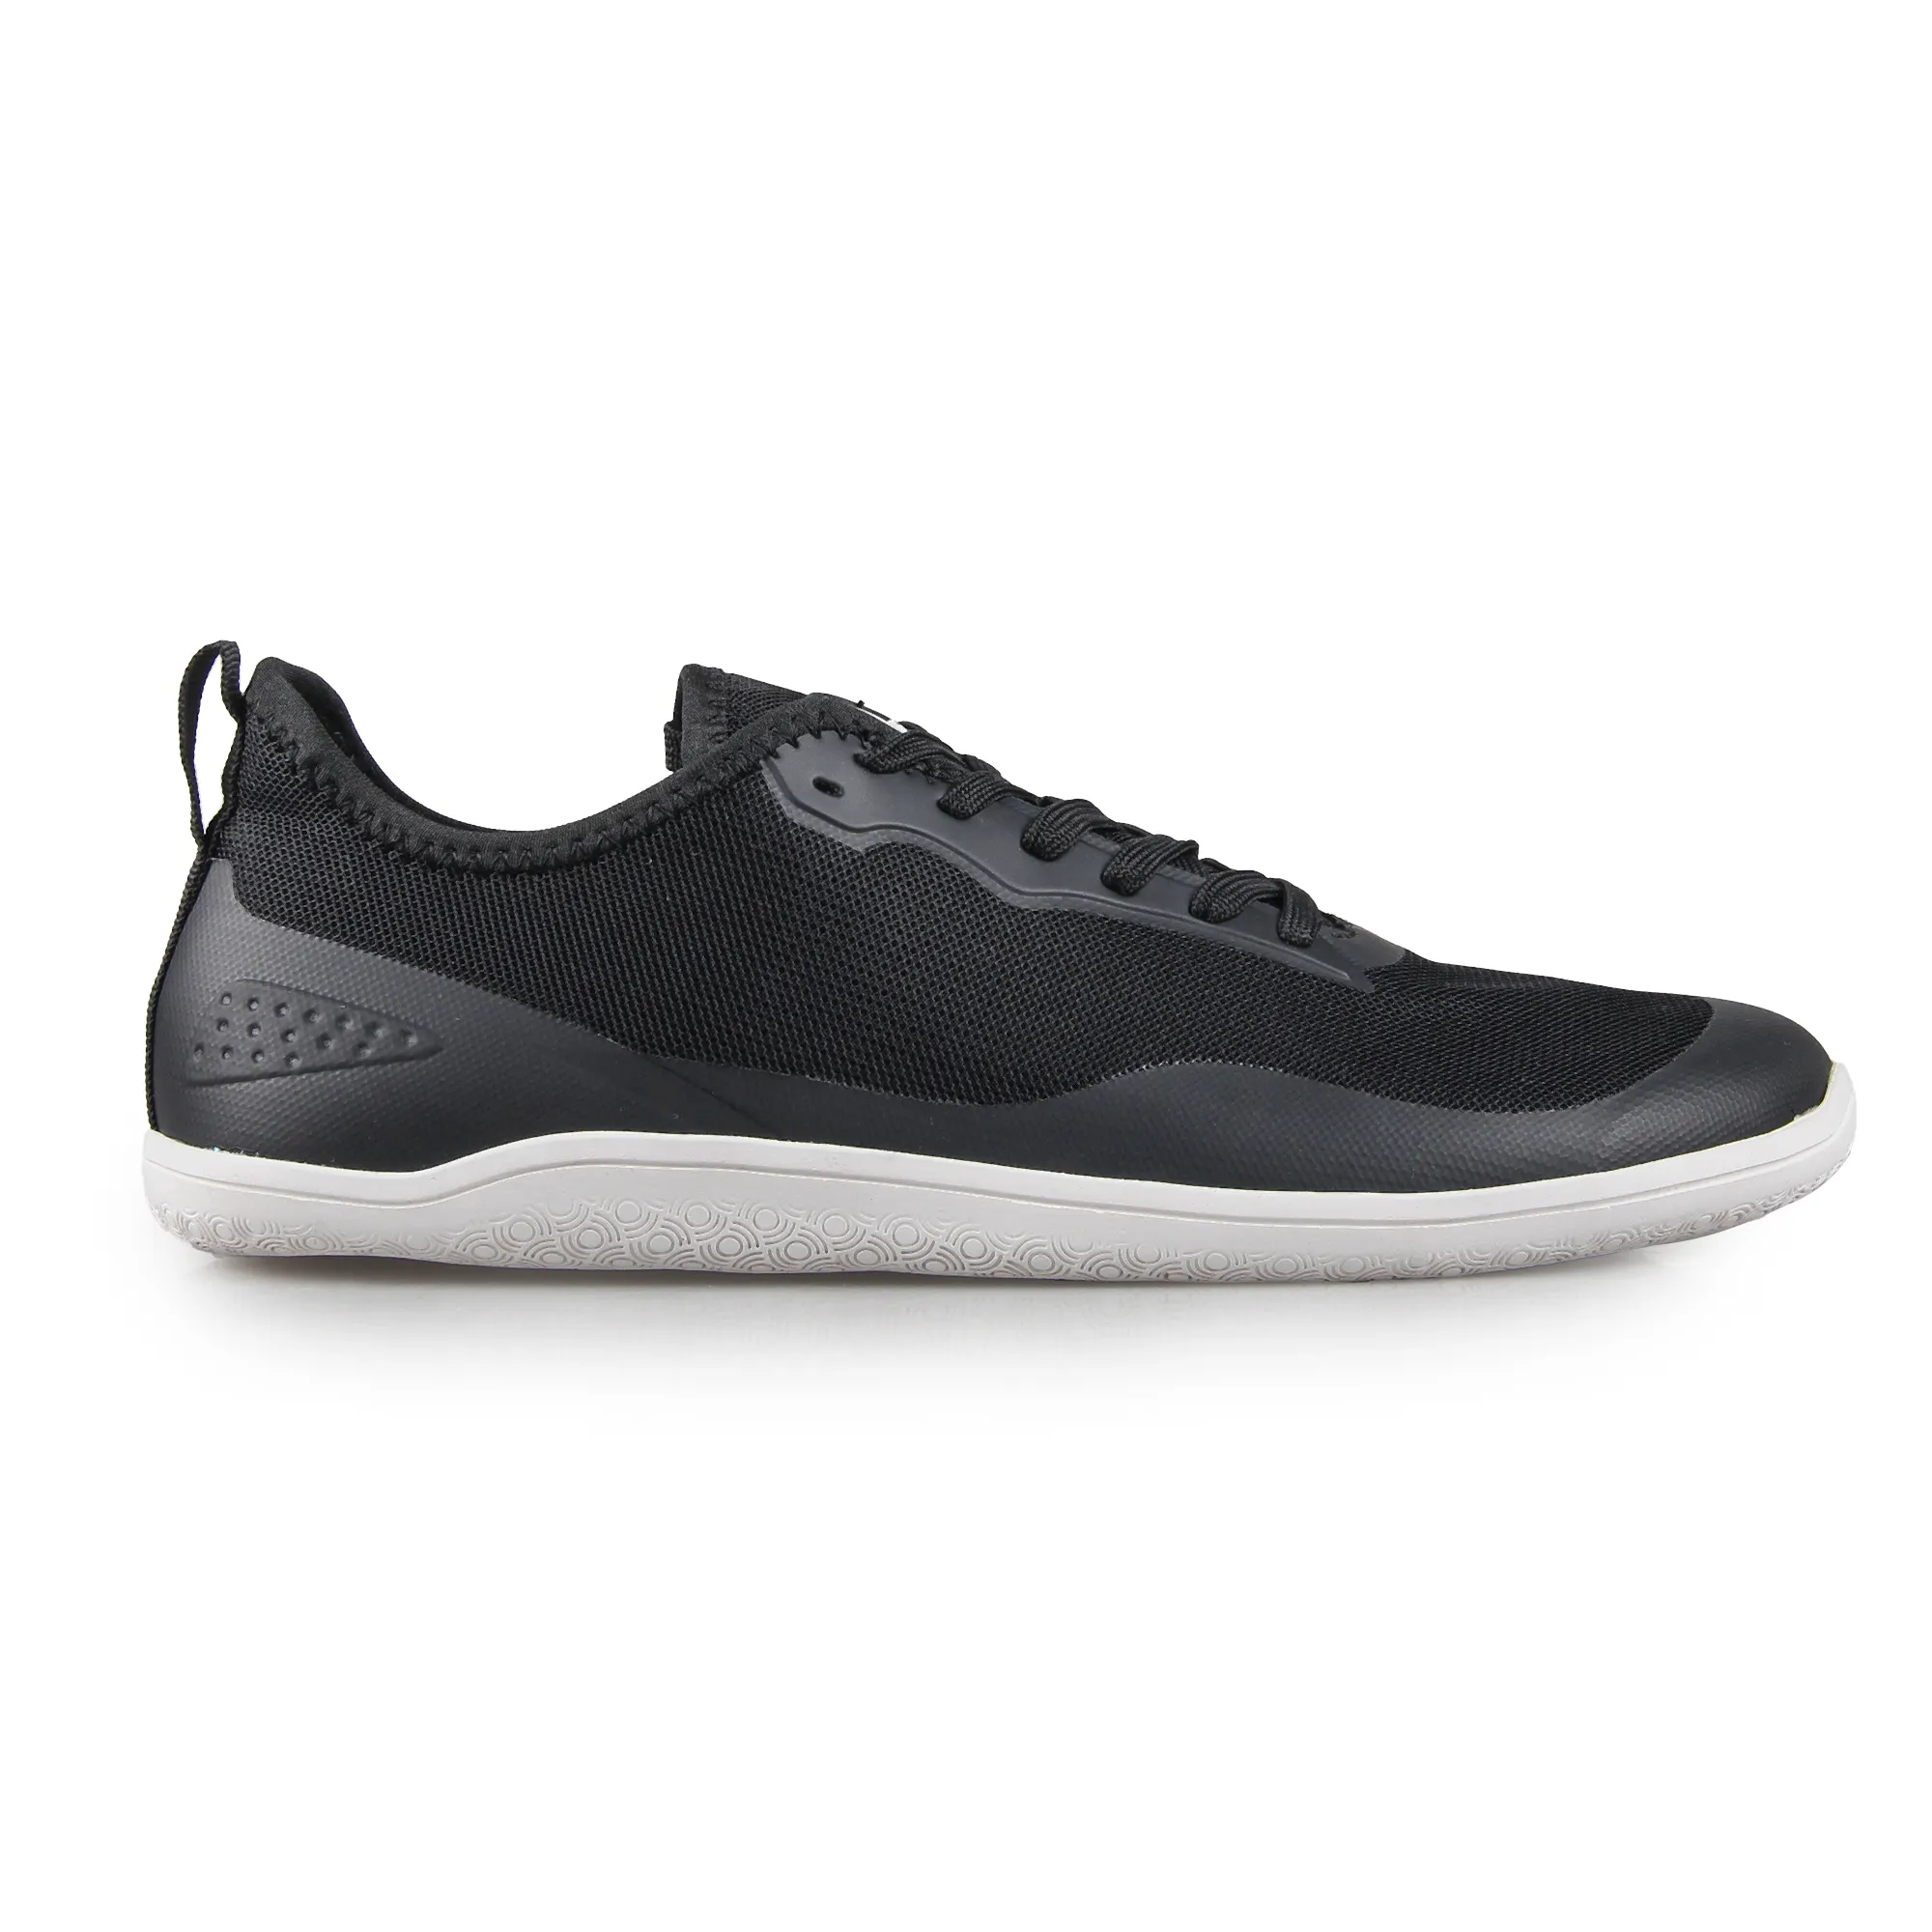 Nuovo stile di moda scarpe sportive in rete da uomo personalizzate Casual Athletic Running Sneaker scarpe a piedi nudi suola a goccia zero minimalista